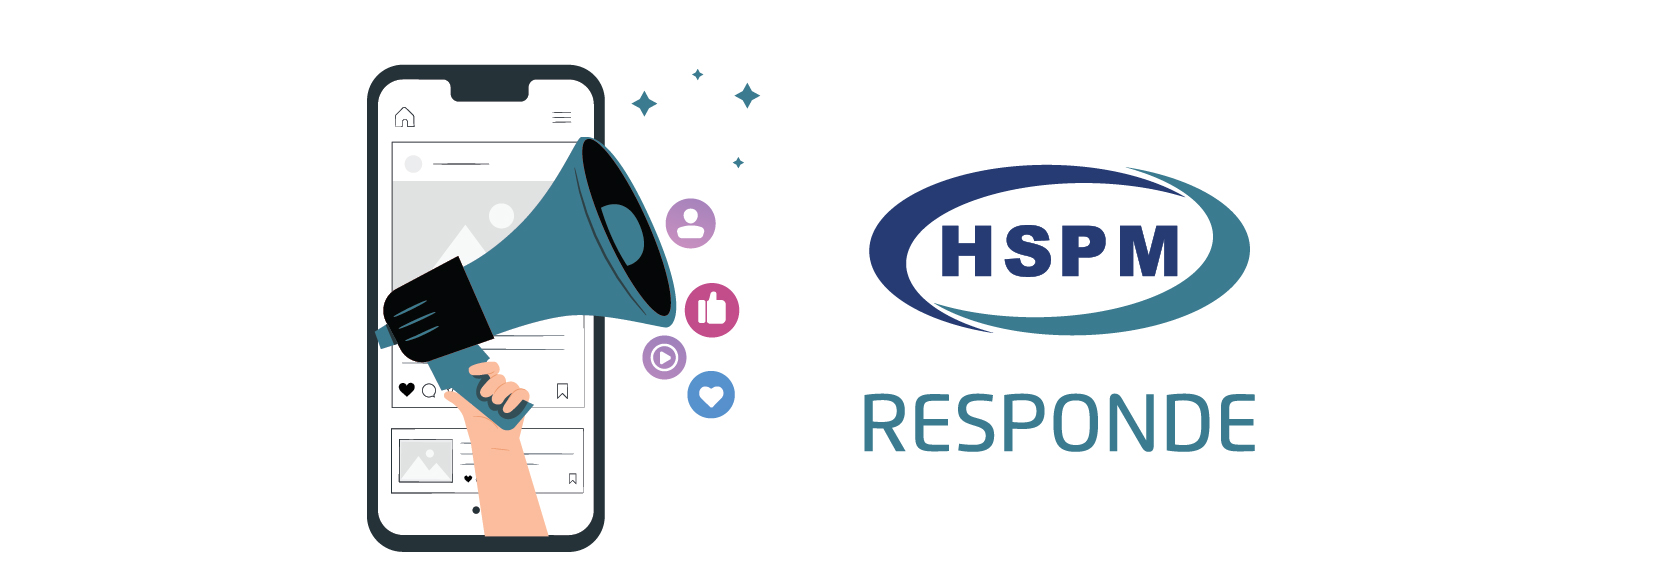 Logo do HSPM responde, com uma mão segurando um megafone saindo de dentro de um celular